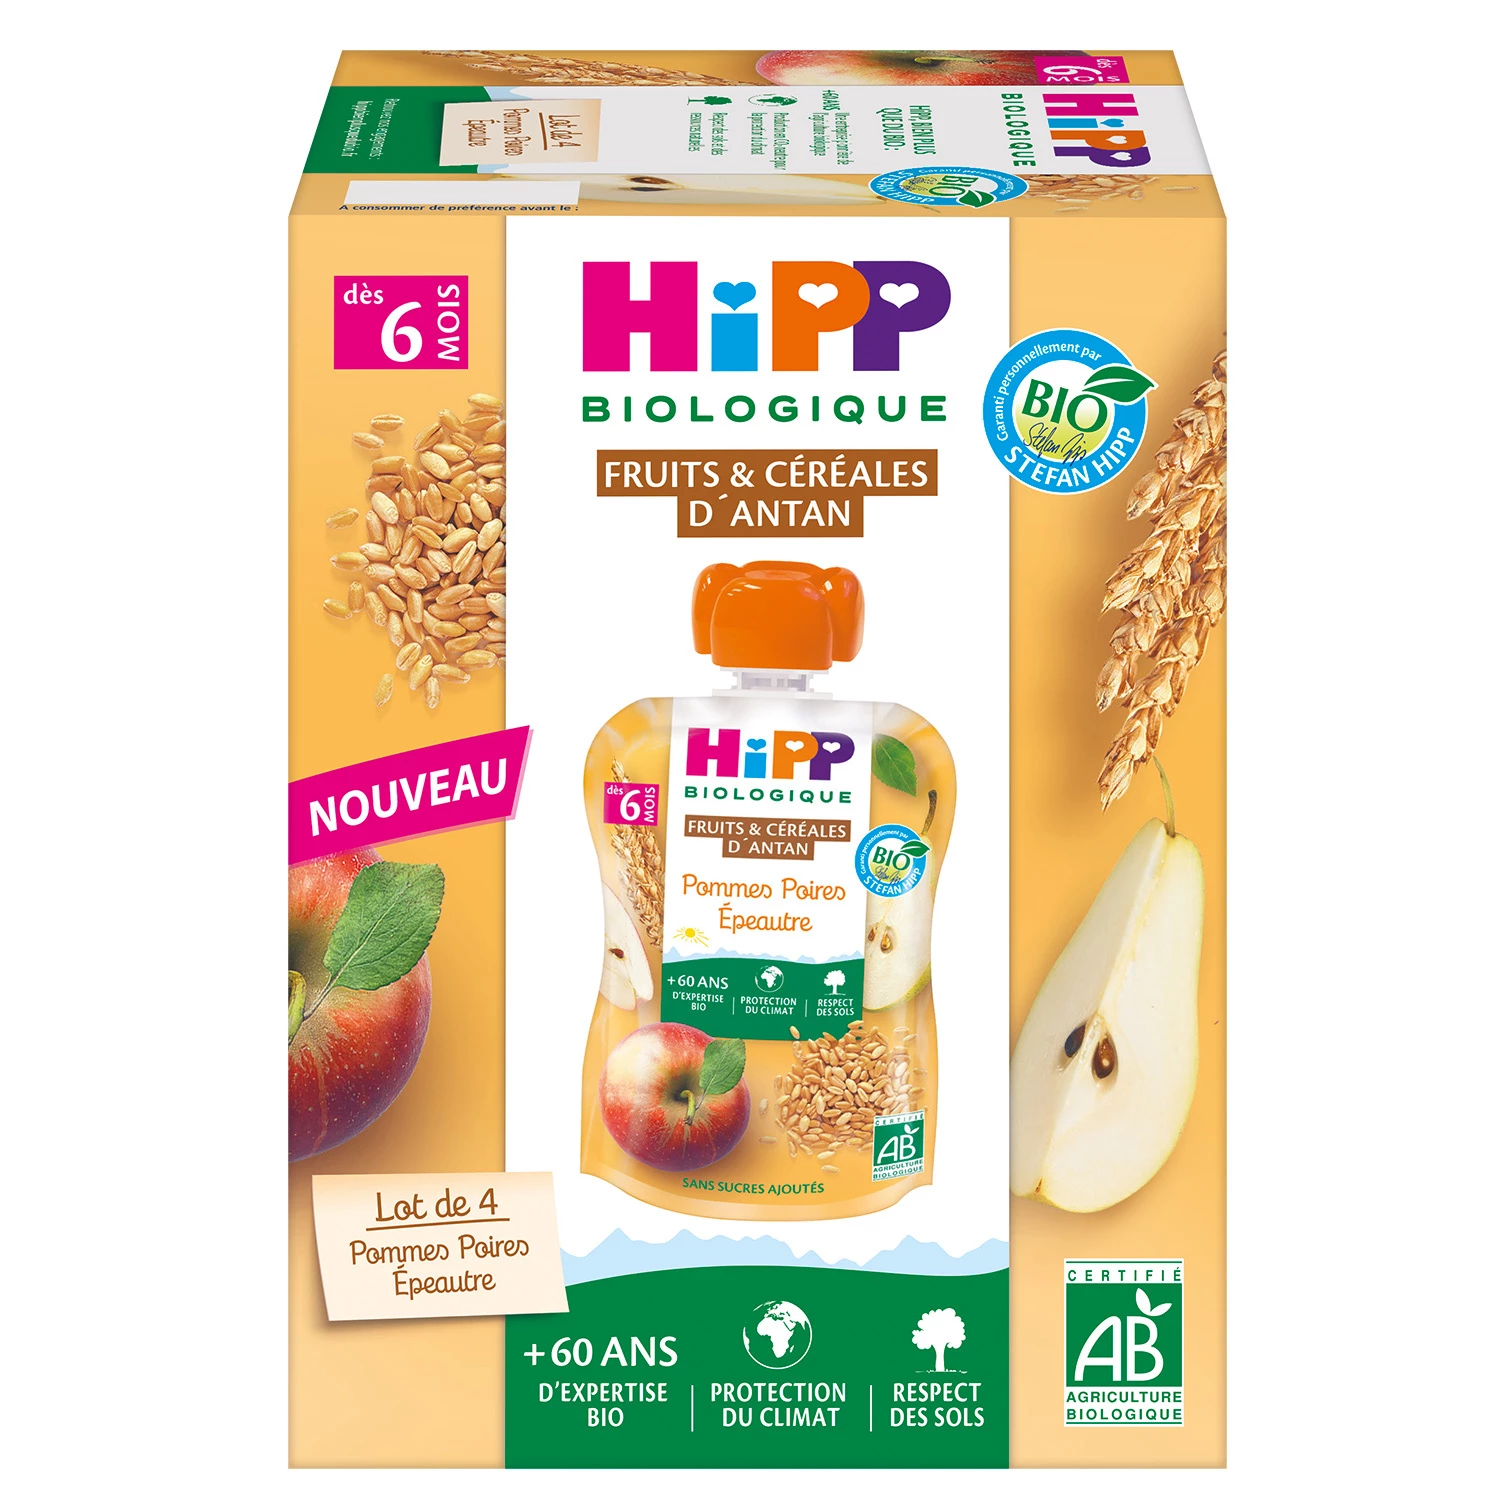 有机斯佩尔特小麦苹果梨蜜饯，6 个月大，4x90 克，HIPP BioLOGIQUE